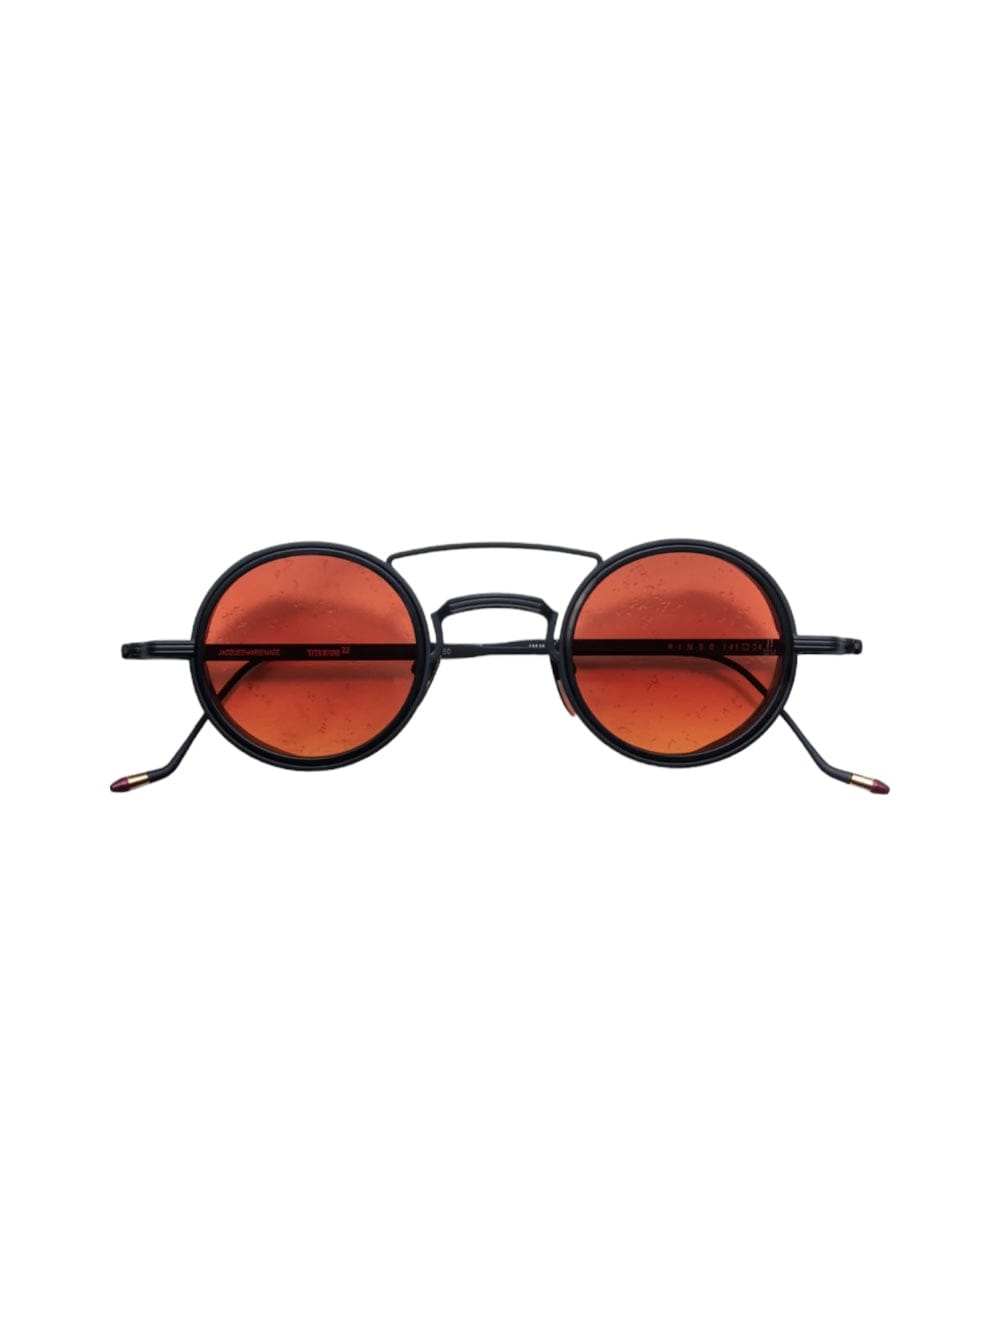 Ringo - Tropic Sunglasses